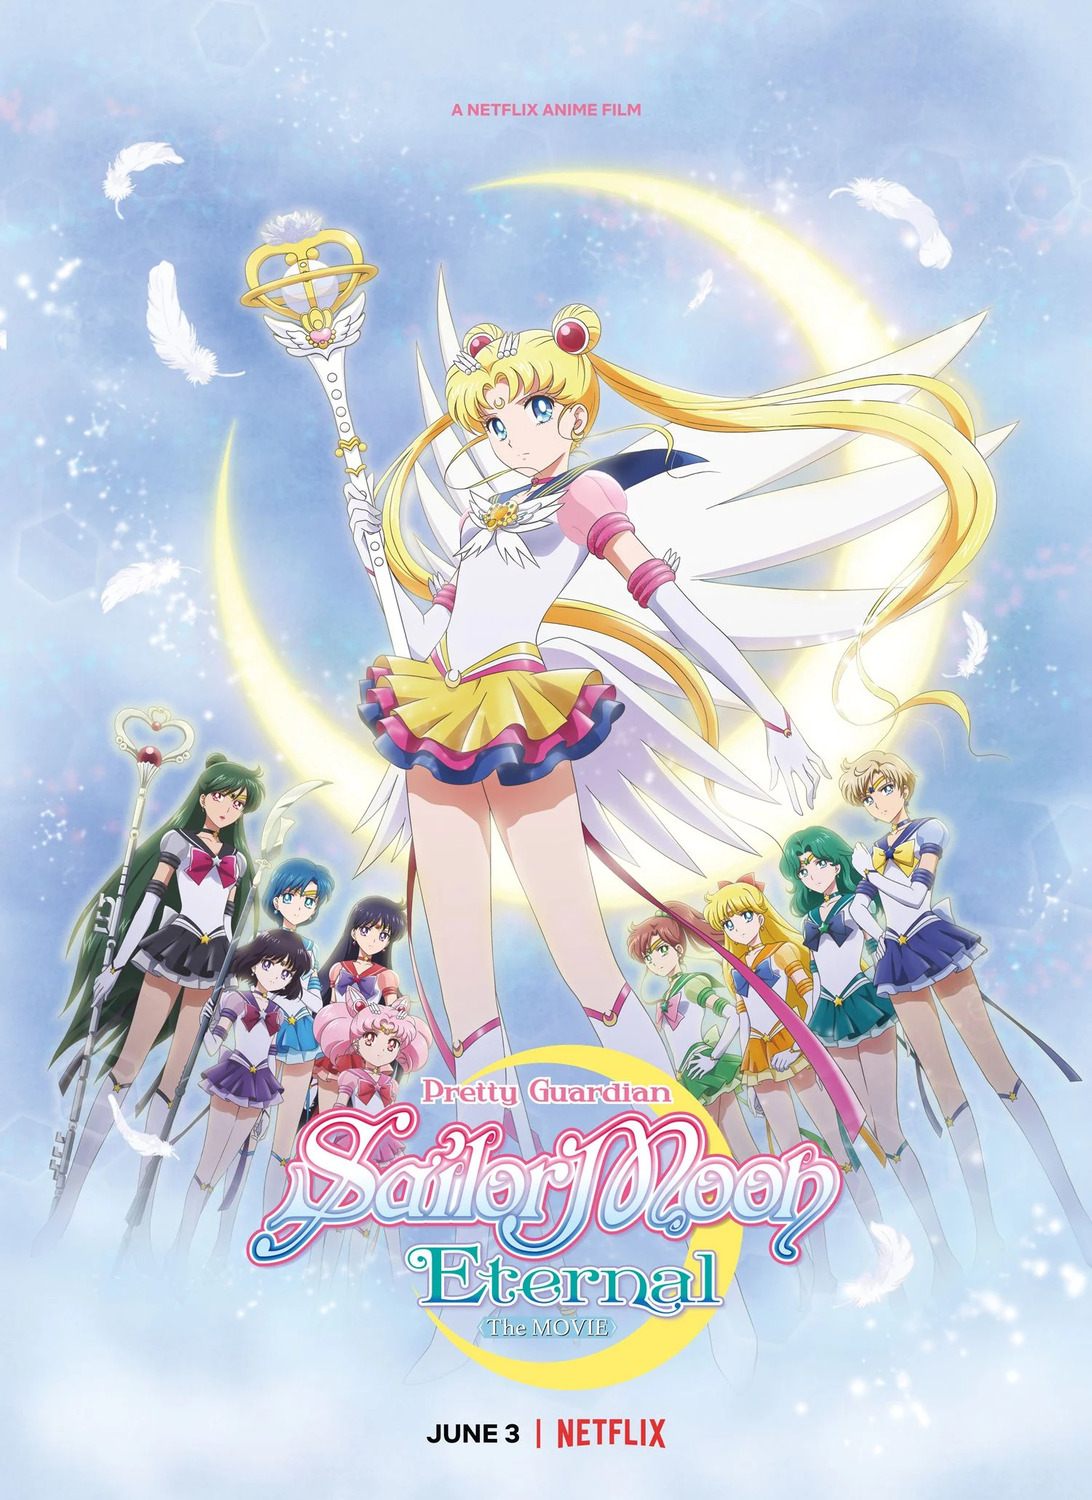 Extra Large Movie Poster Image for Gekijouban Bishoujo Senshi Sailor Moon Eternal (#3 of 4)